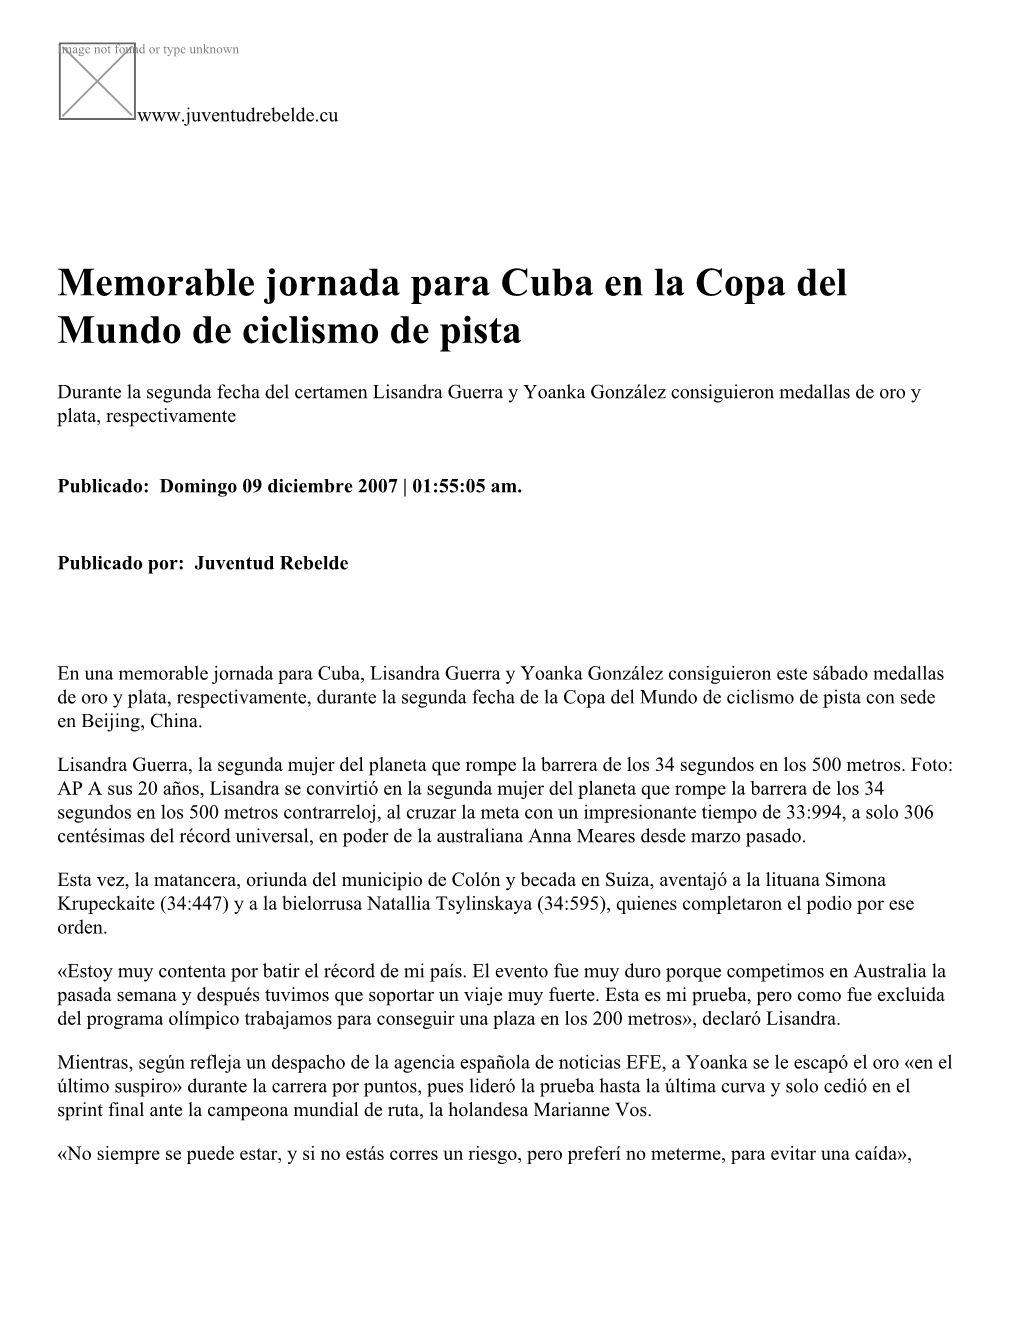 Memorable Jornada Para Cuba En La Copa Del Mundo De Ciclismo De Pista